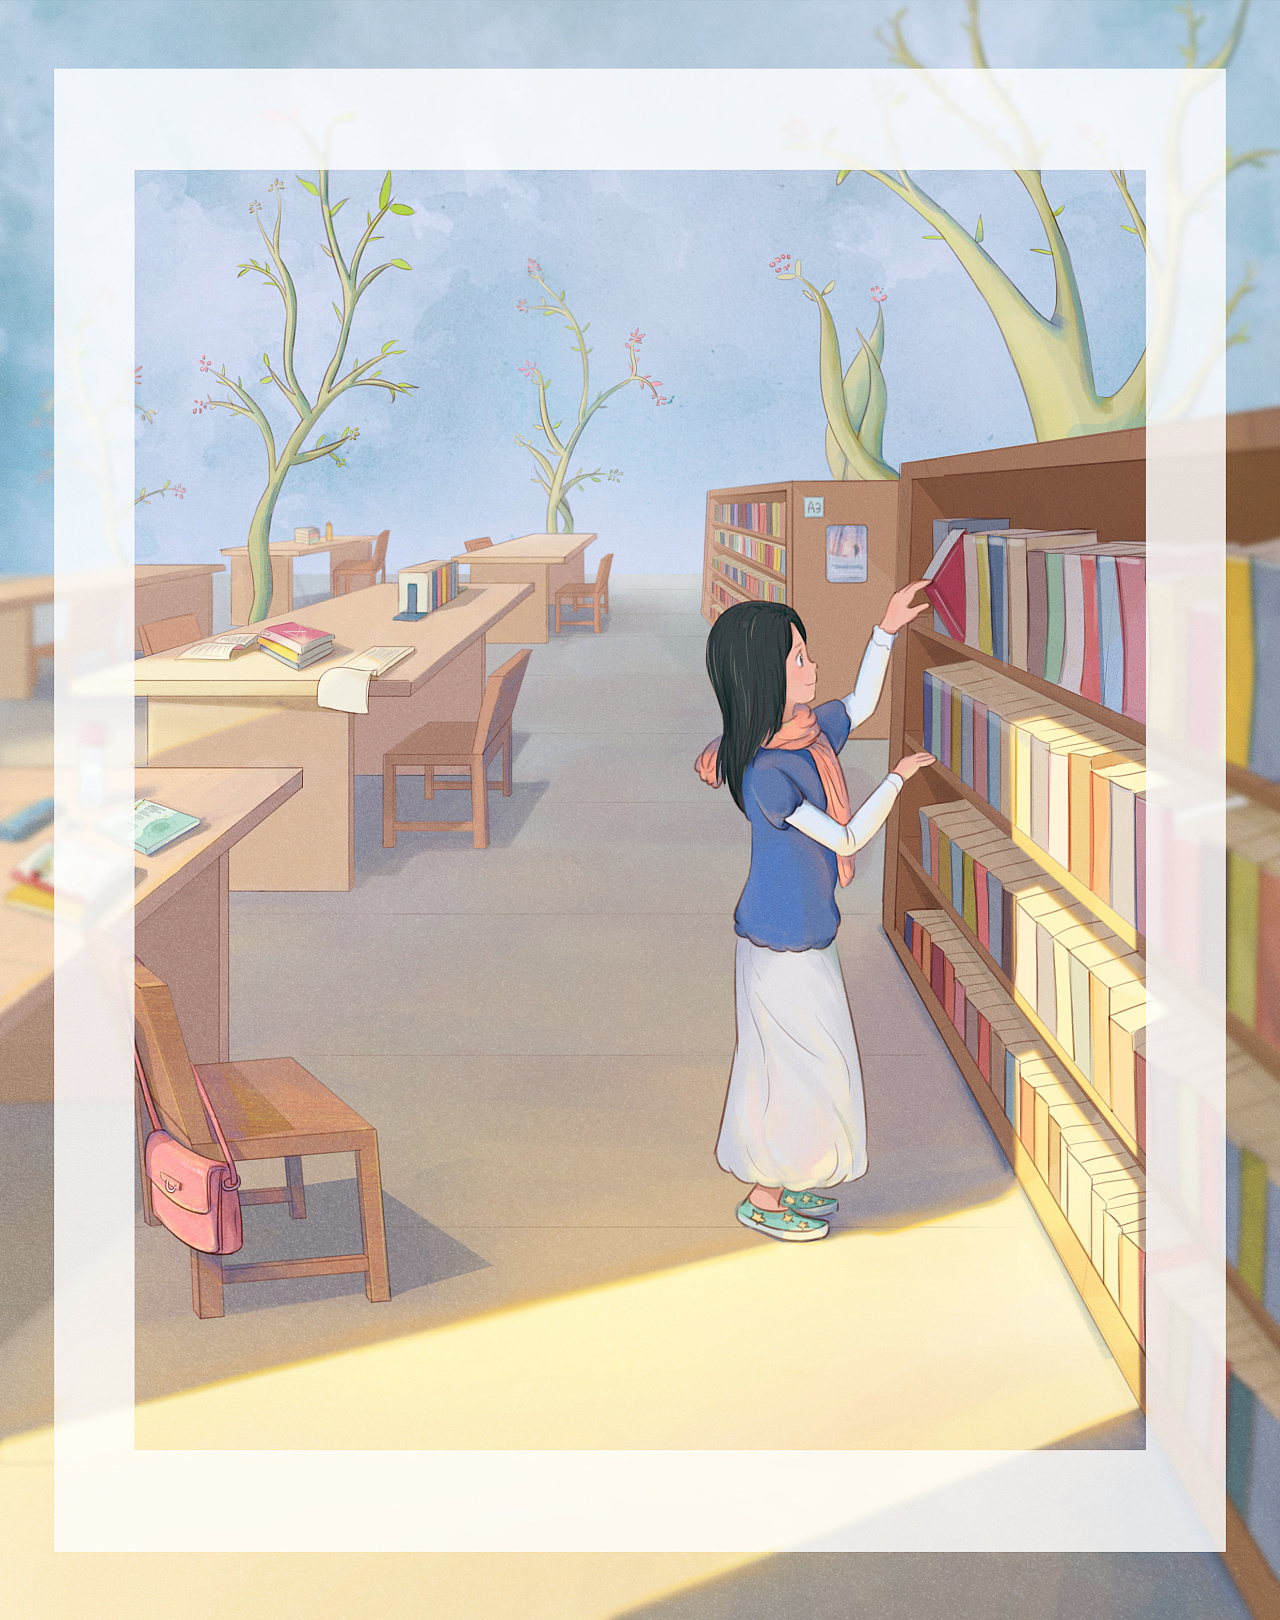 校园生活校园图书馆借书暖色温馨可爱卡通插画图片-千库网